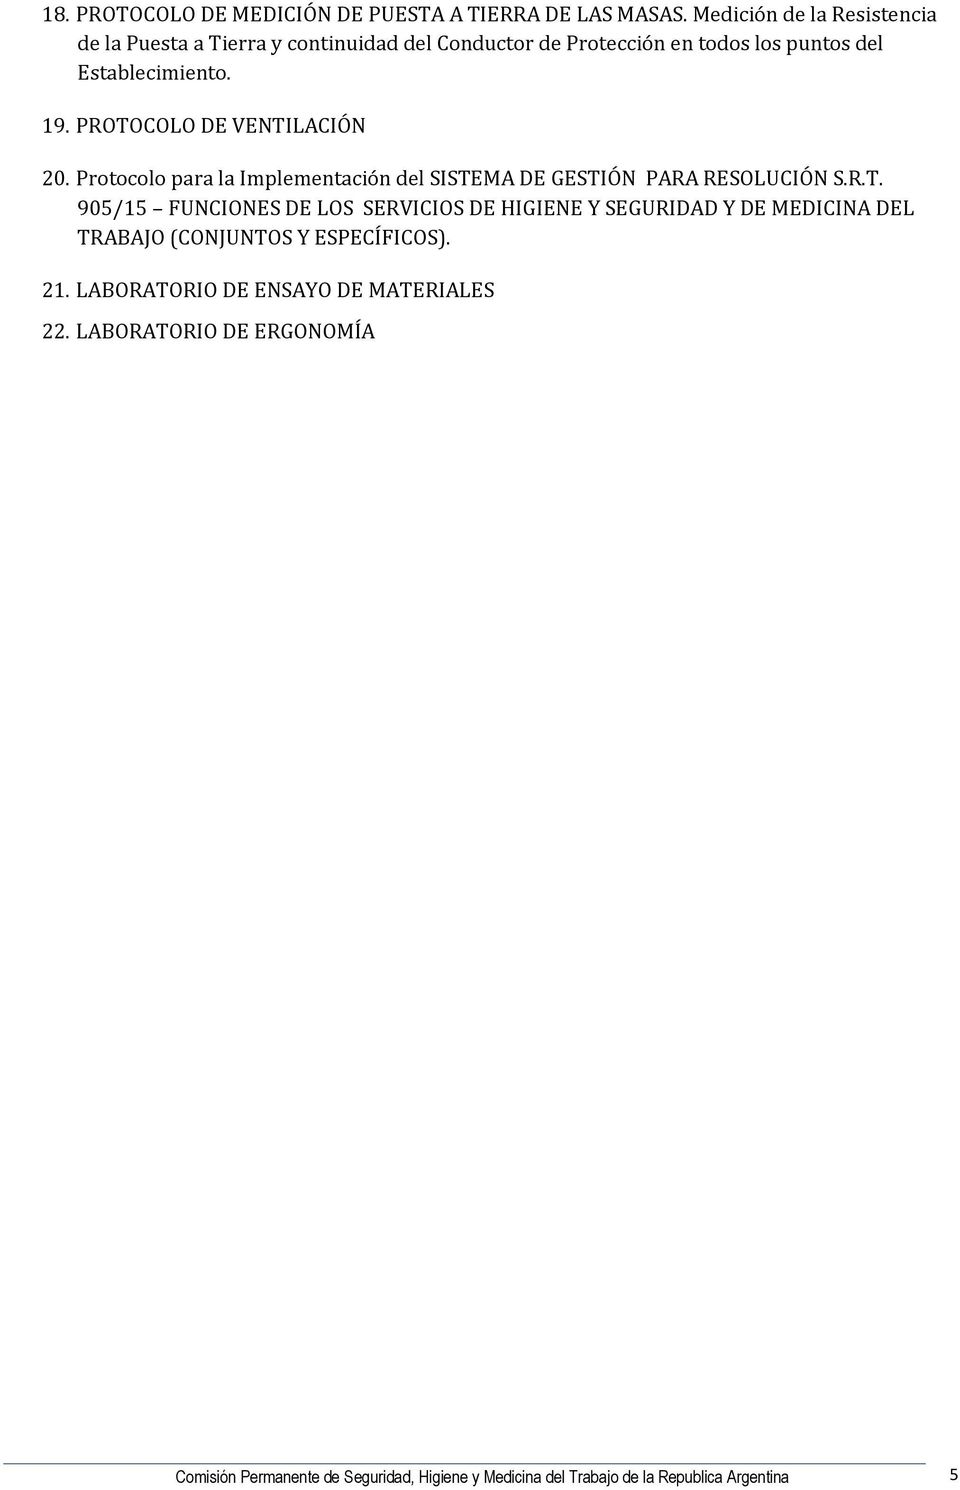 PROTOCOLO DE VENTILACIÓN 20. Protocolo para la Implementación del SISTEMA DE GESTIÓN PARA RESOLUCIÓN S.R.T. 905/15 FUNCIONES DE LOS SERVICIOS DE HIGIENE Y SEGURIDAD Y DE MEDICINA DEL TRABAJO (CONJUNTOS Y ESPECÍFICOS).